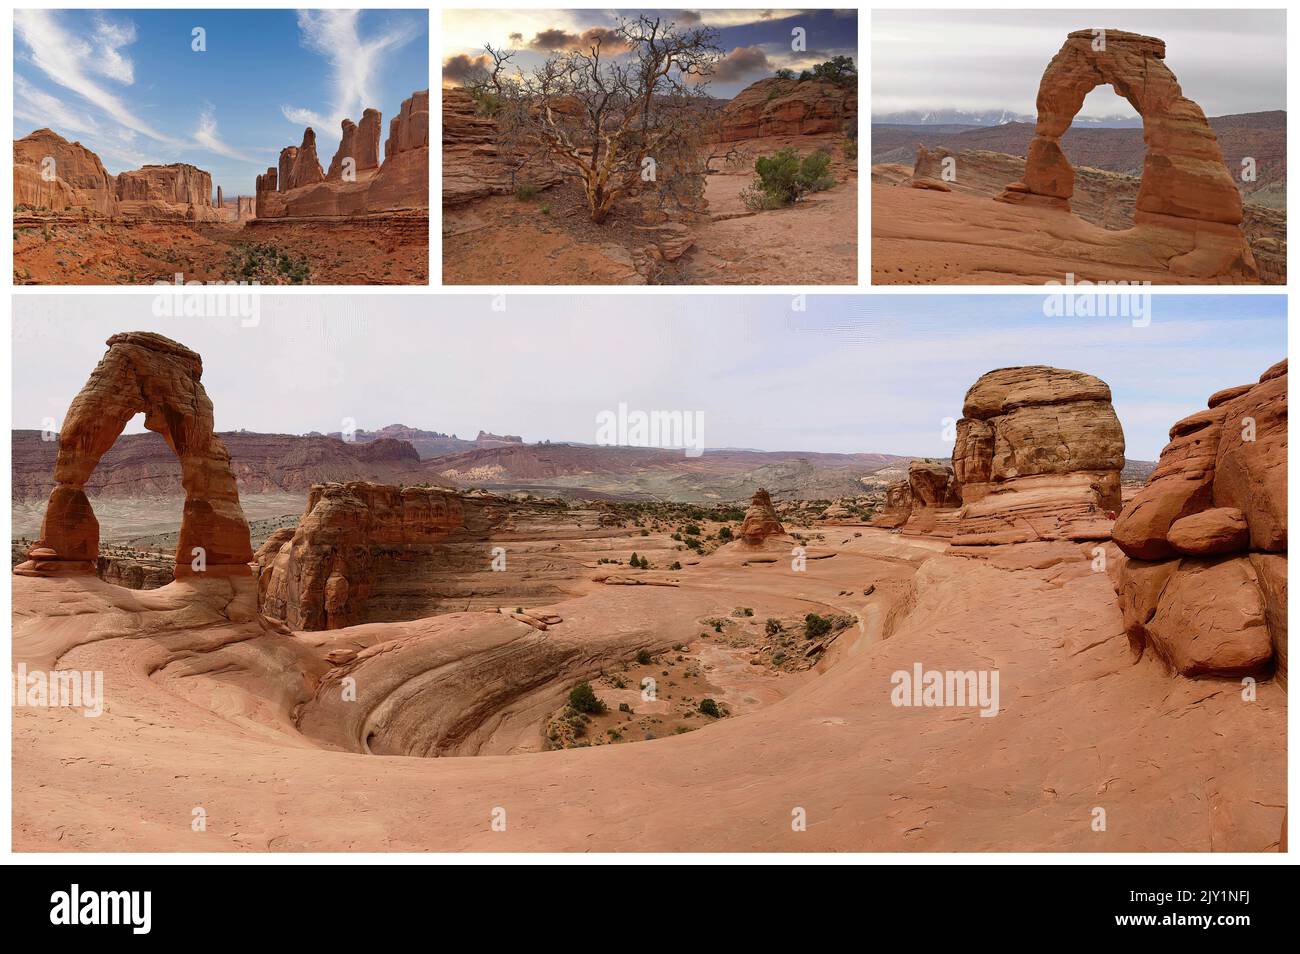 L'emblématique Monument Valley, Arizona, l'un des symboles des États-Unis et de l'Ouest ancien et sauvage, maintenant une réserve indienne Navajo (1) Banque D'Images